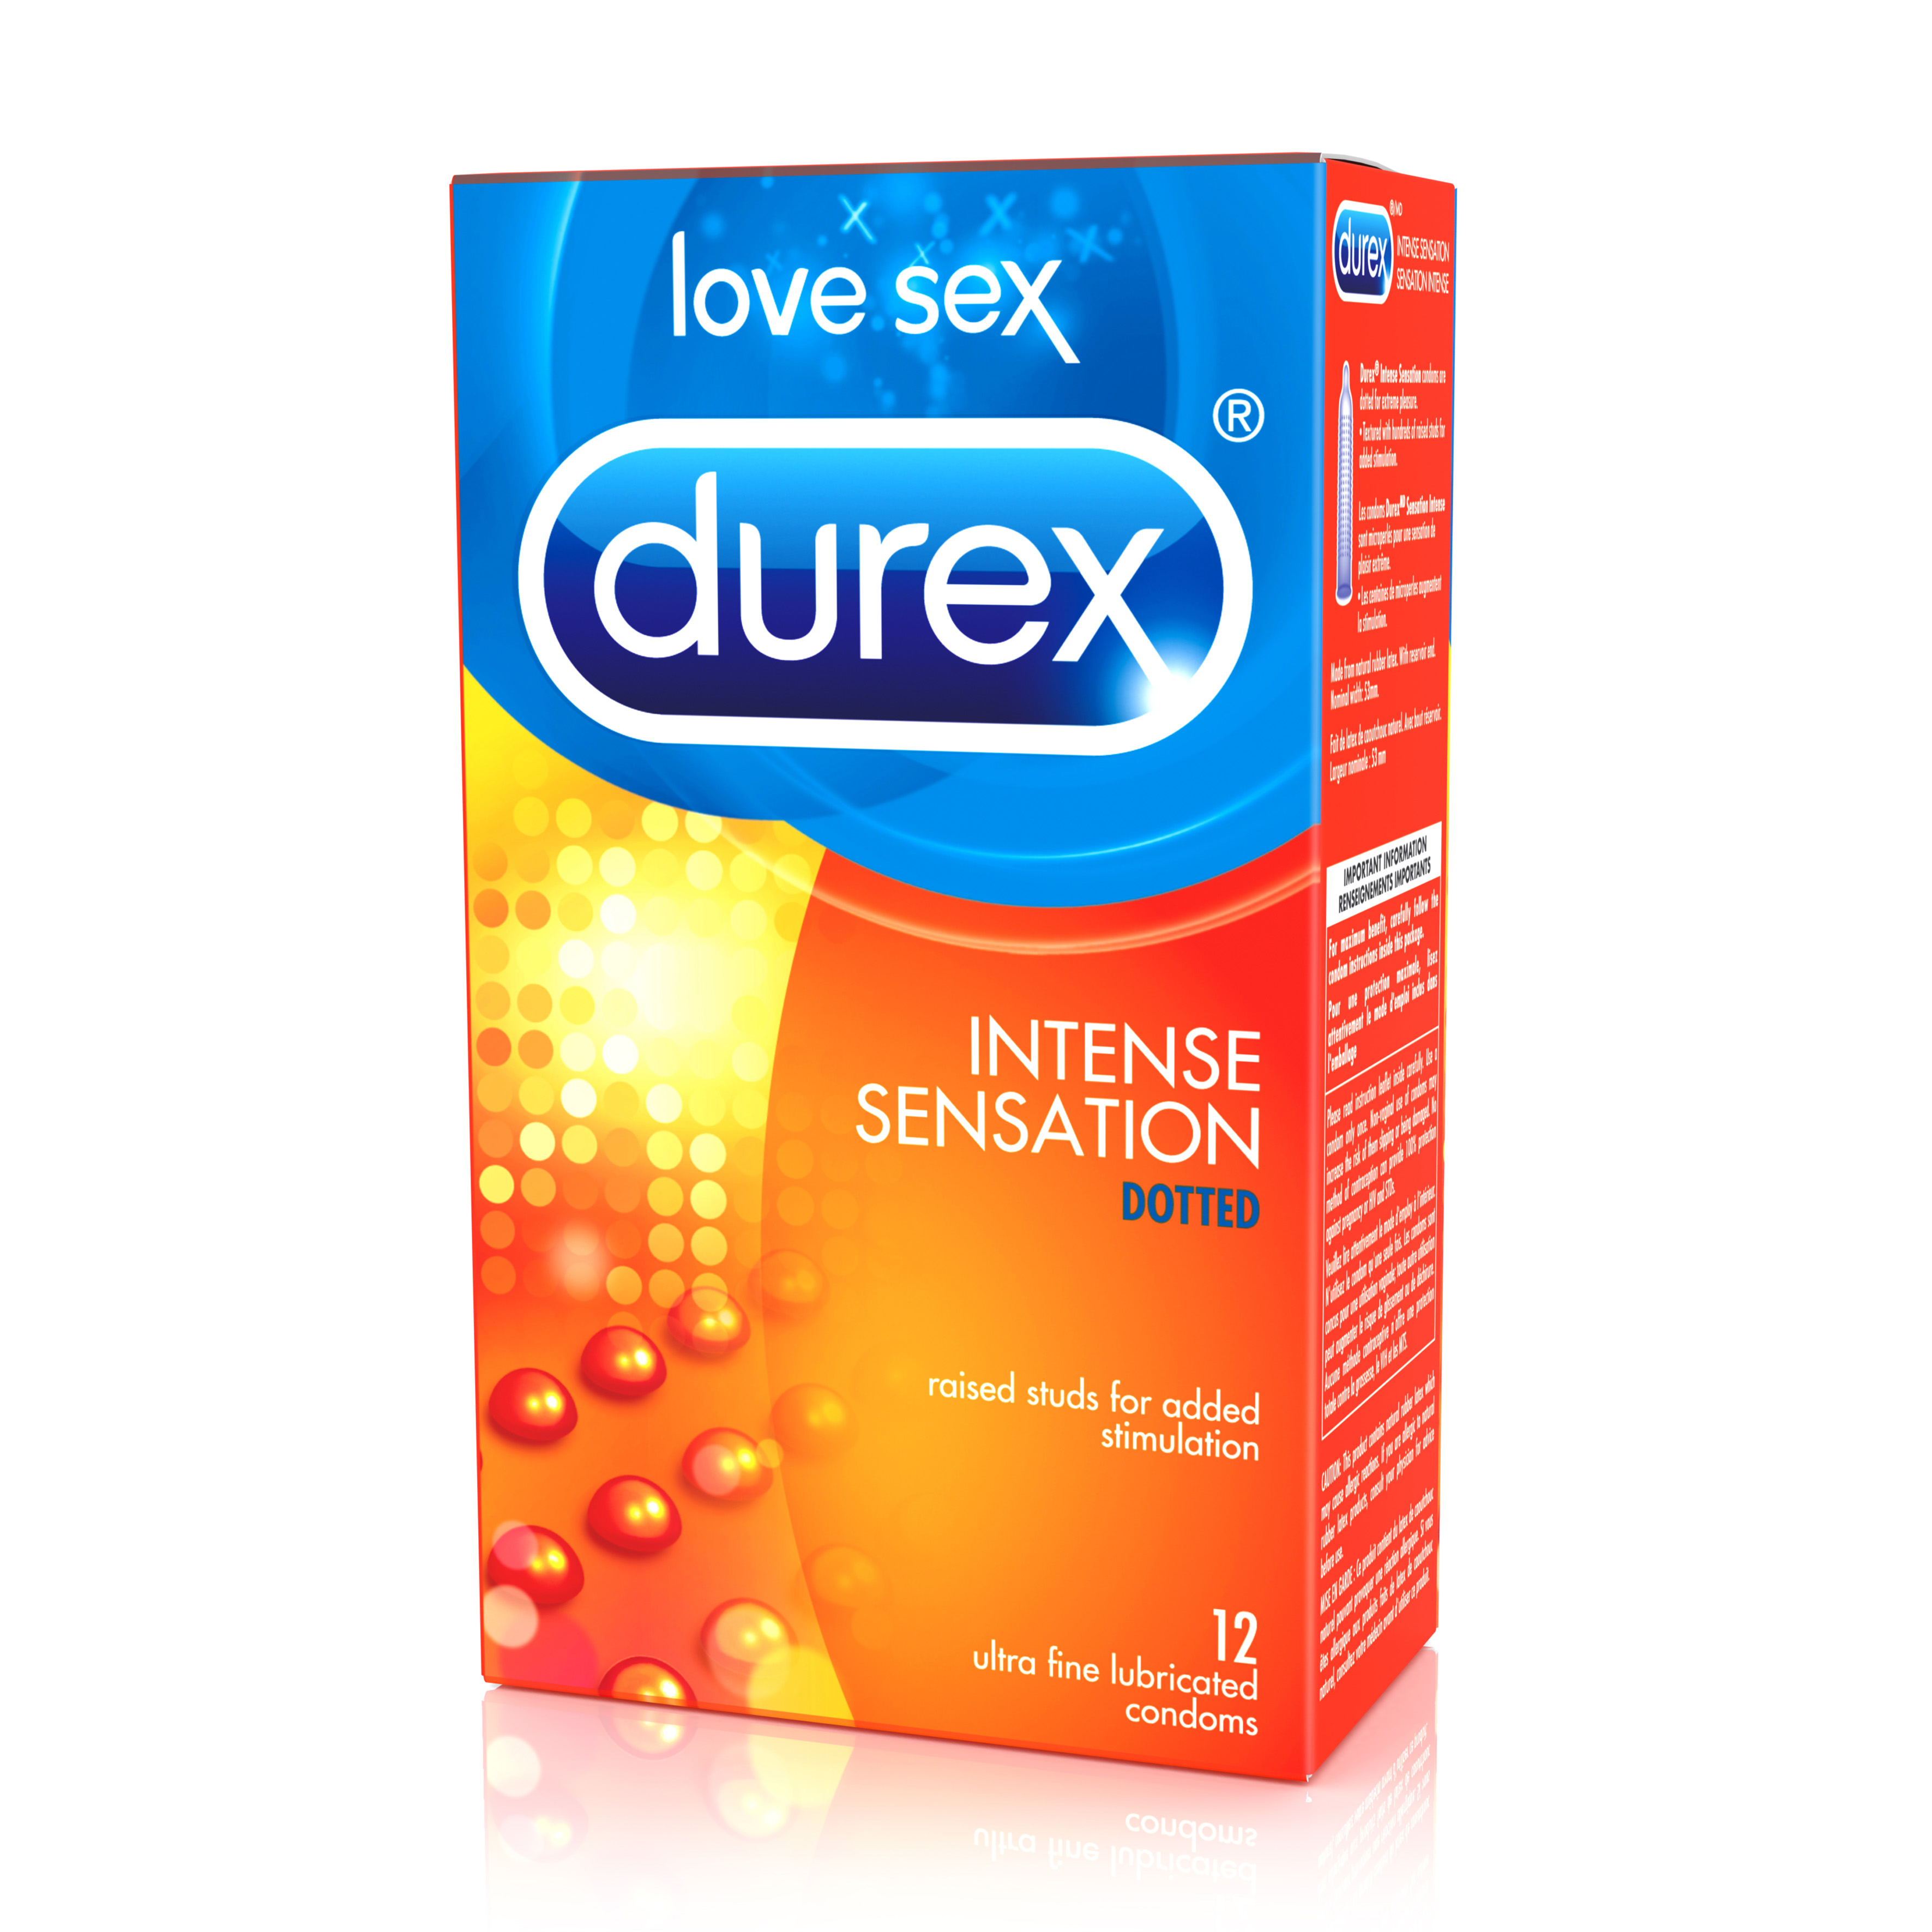 DUREX Intense Sensation Dotted Condoms Canada